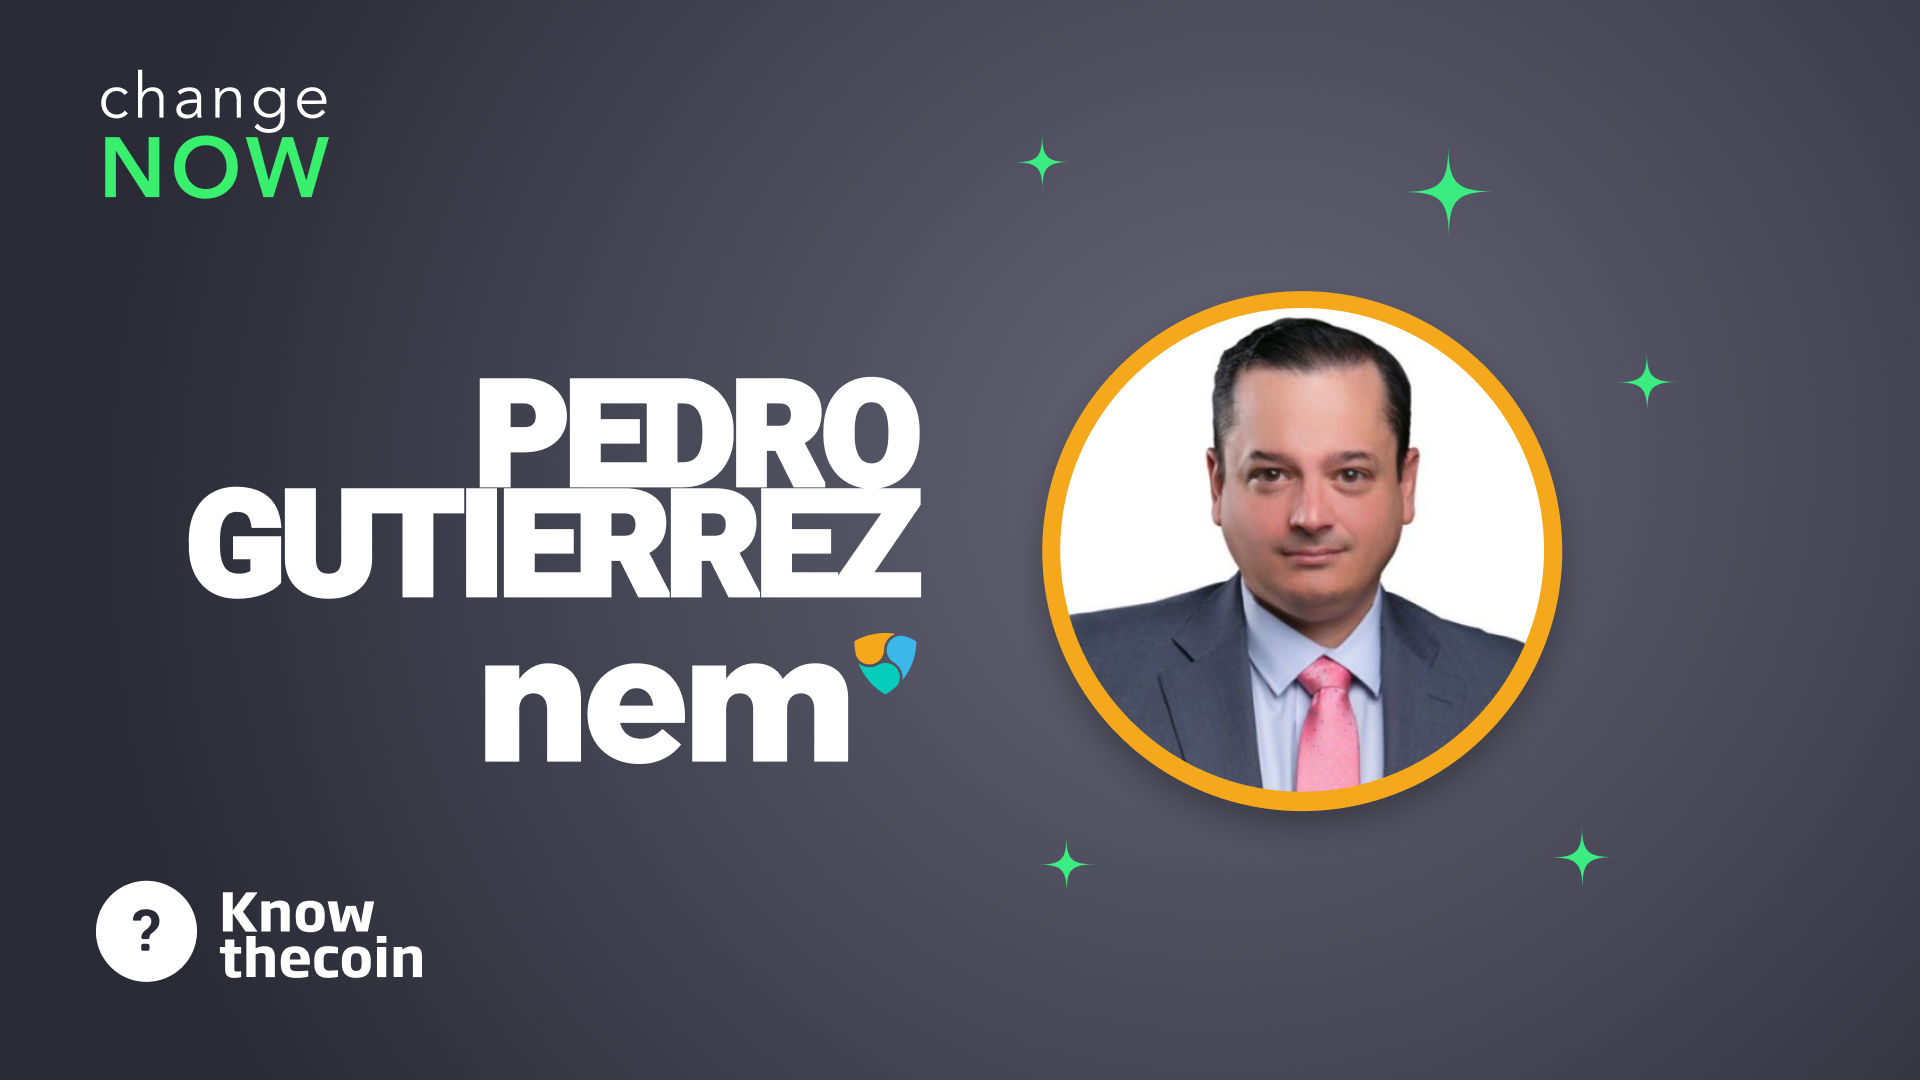 Know The Coin: NEM's Pedro Gutiérrez